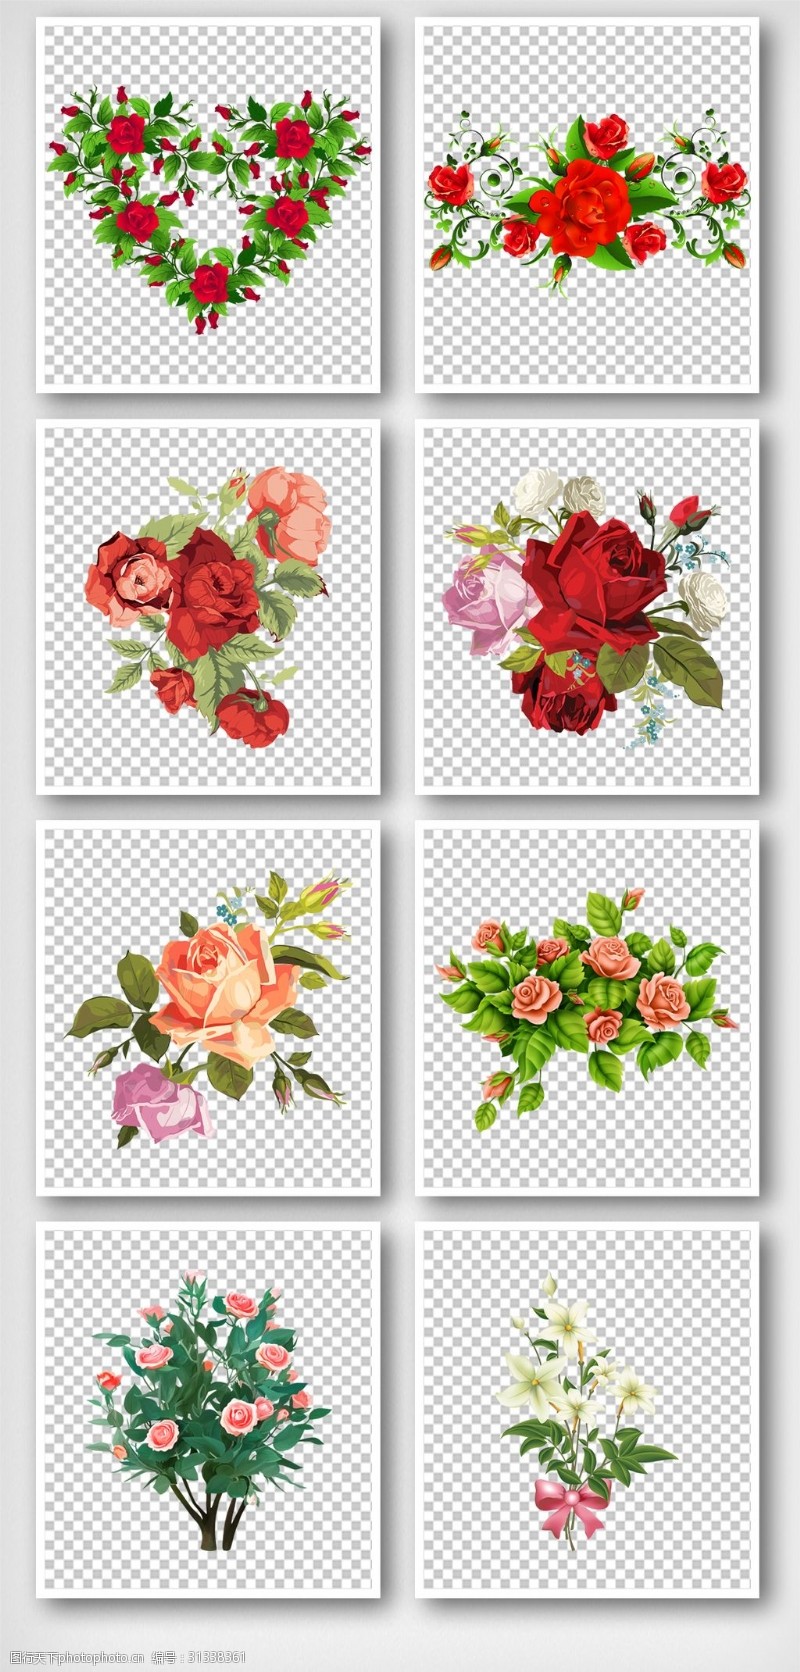 春天背景墙清新美丽手绘红色玫瑰花装饰元素